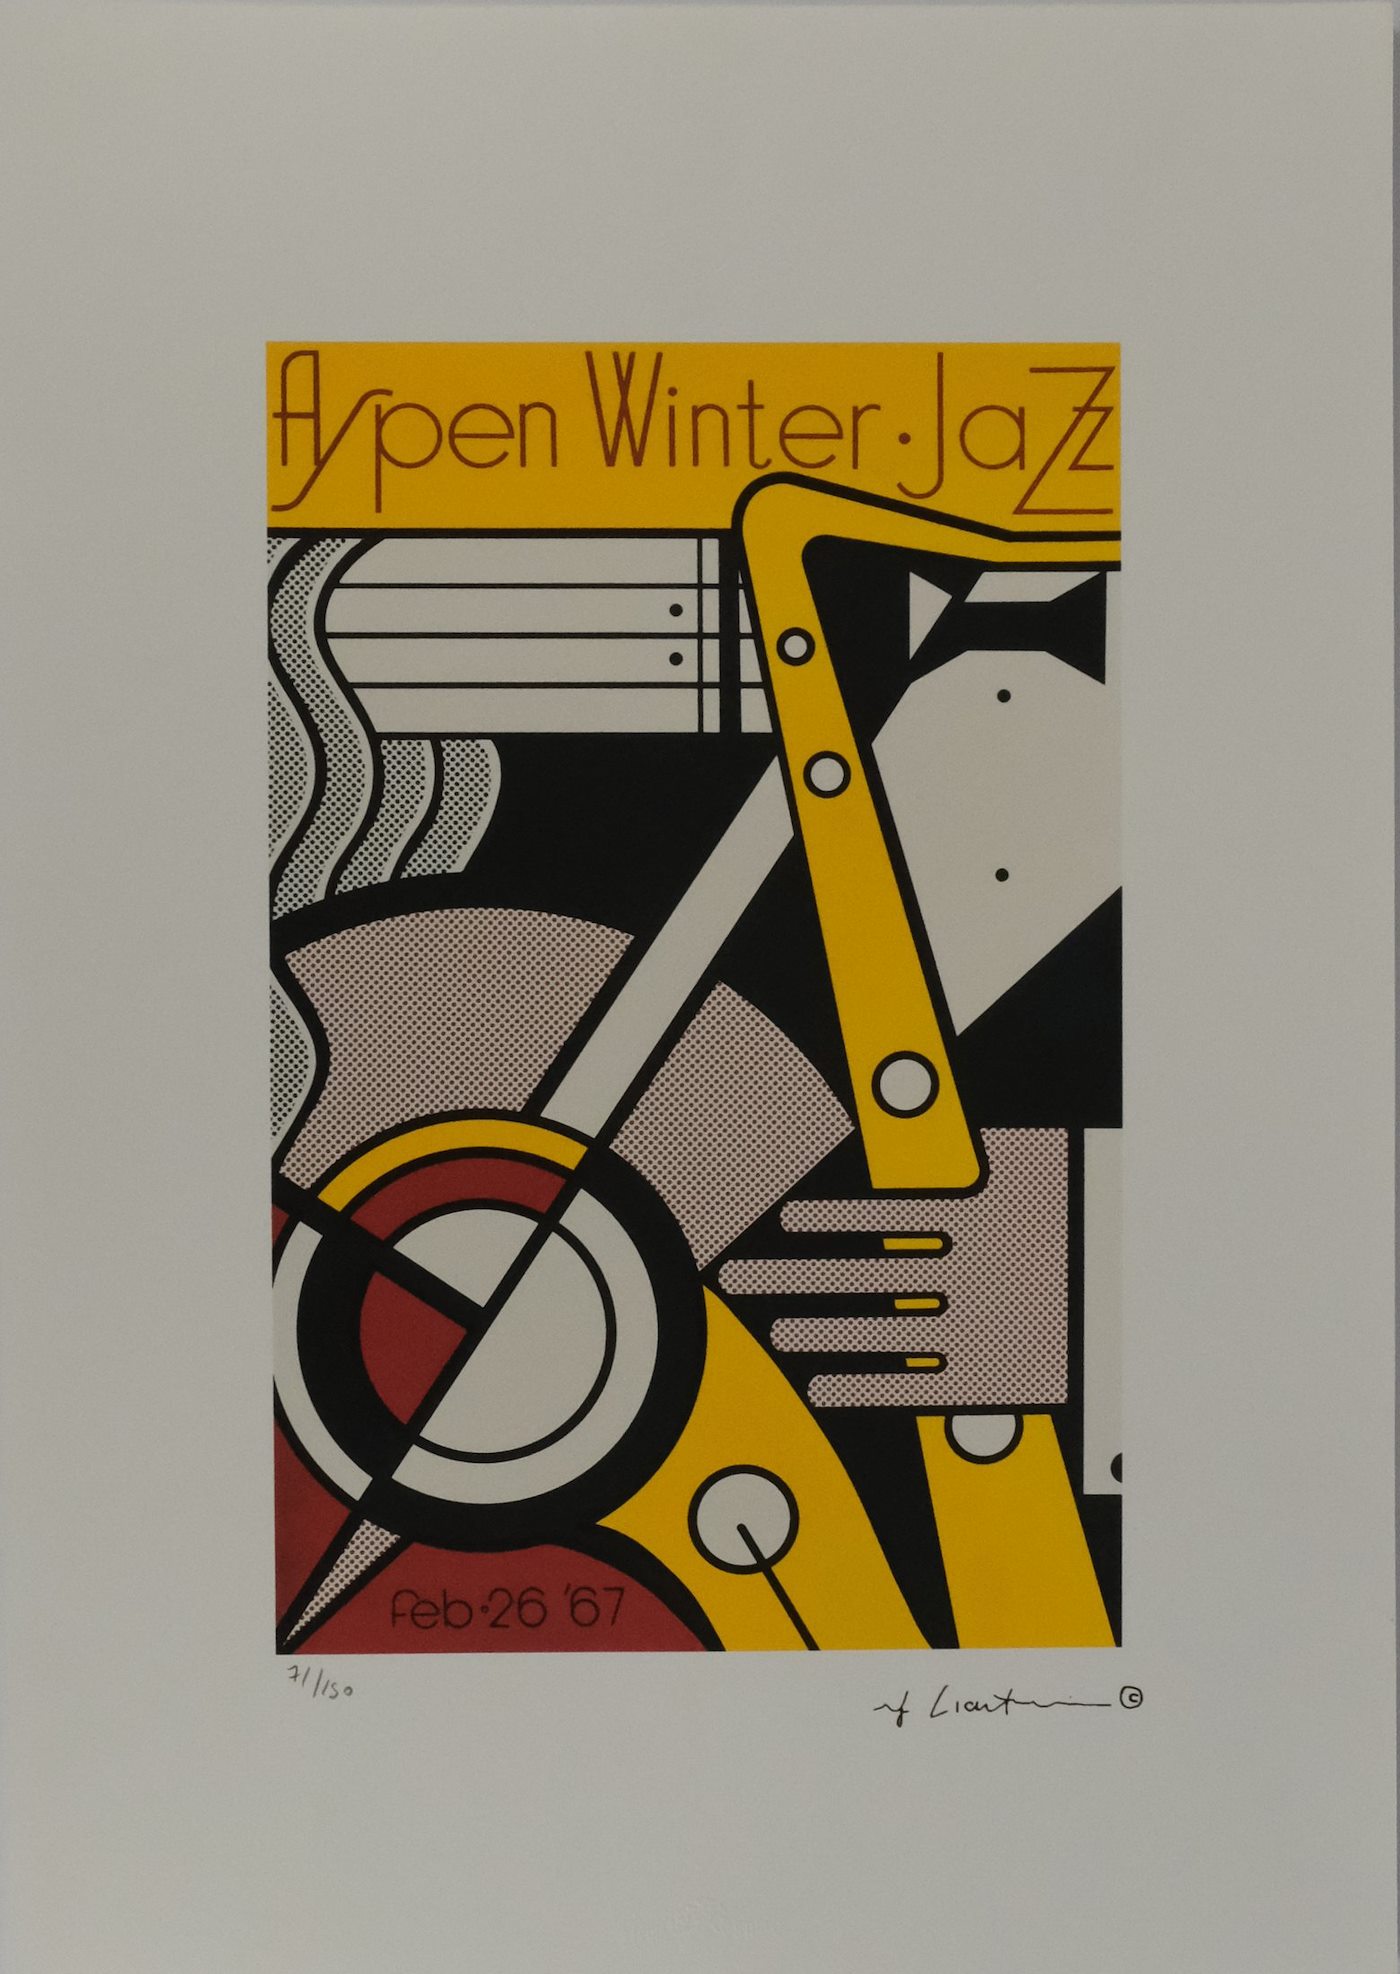 Roy Lichtenstein - Aspen Winter Jazz